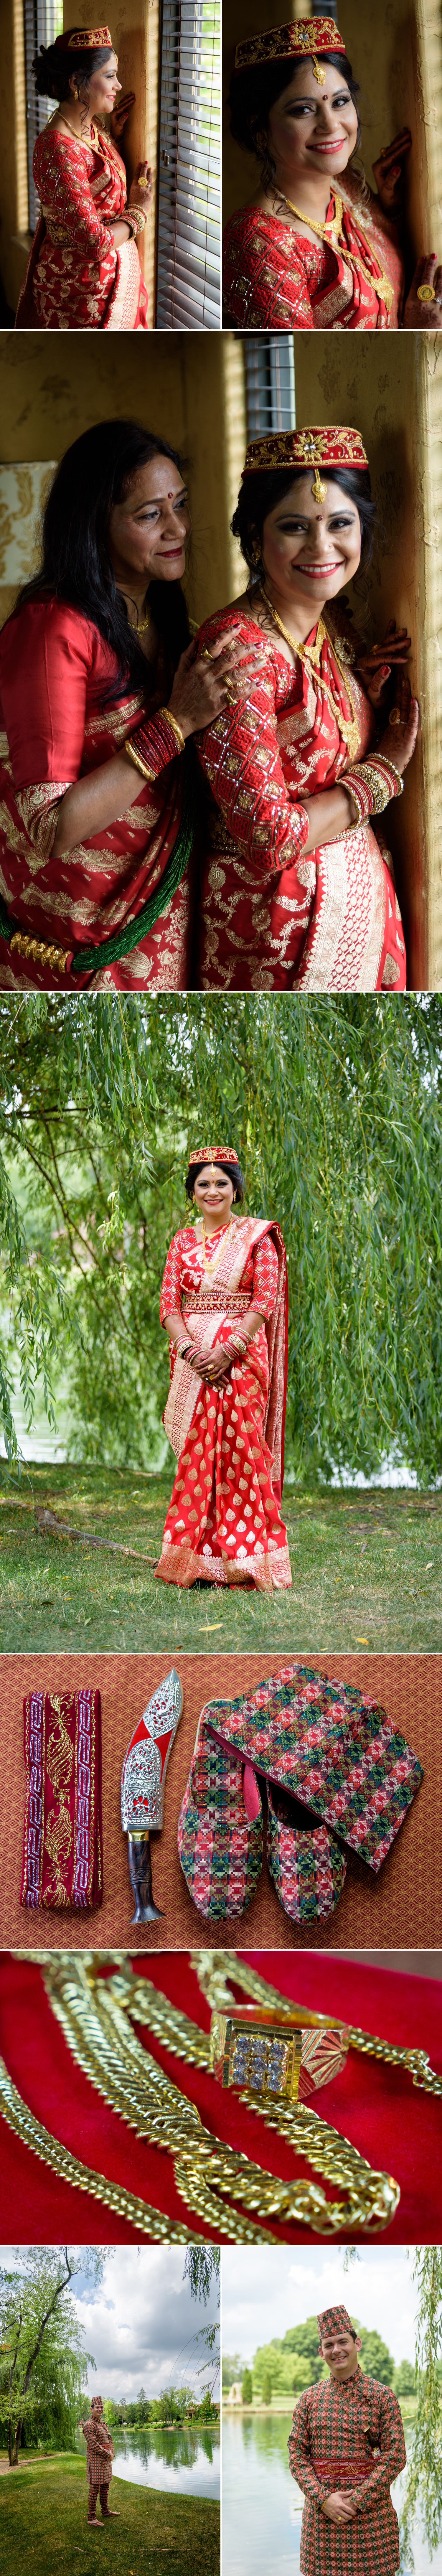 Gervasi Indian Wedding